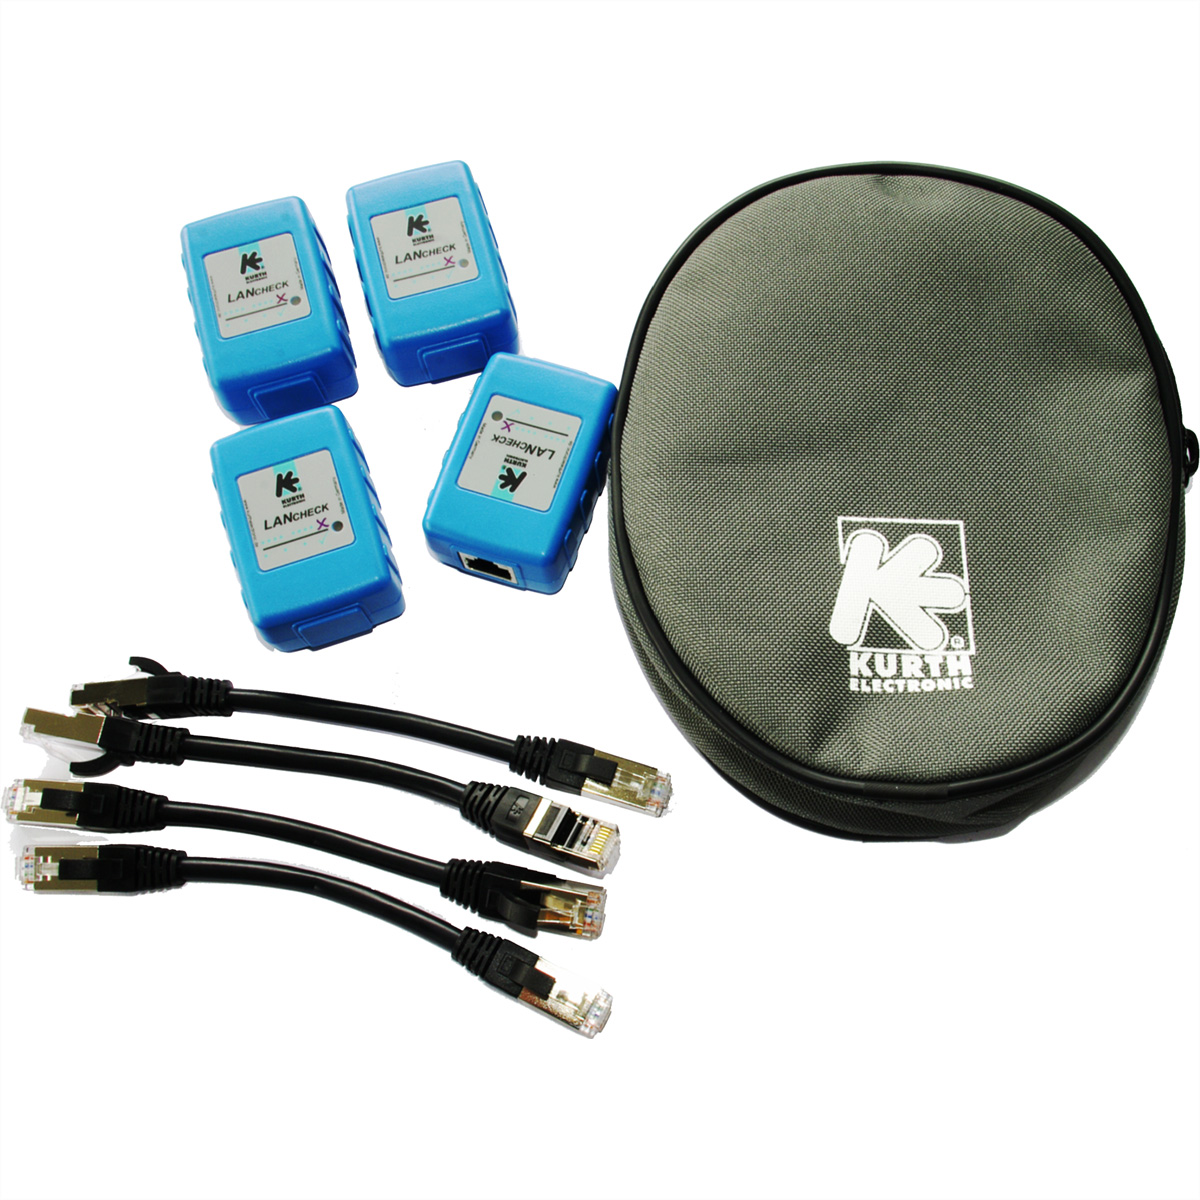 KE7010 Kit aus vier Remote-Einheiten für KE7100 und KE7200, ID frei konfigurierb